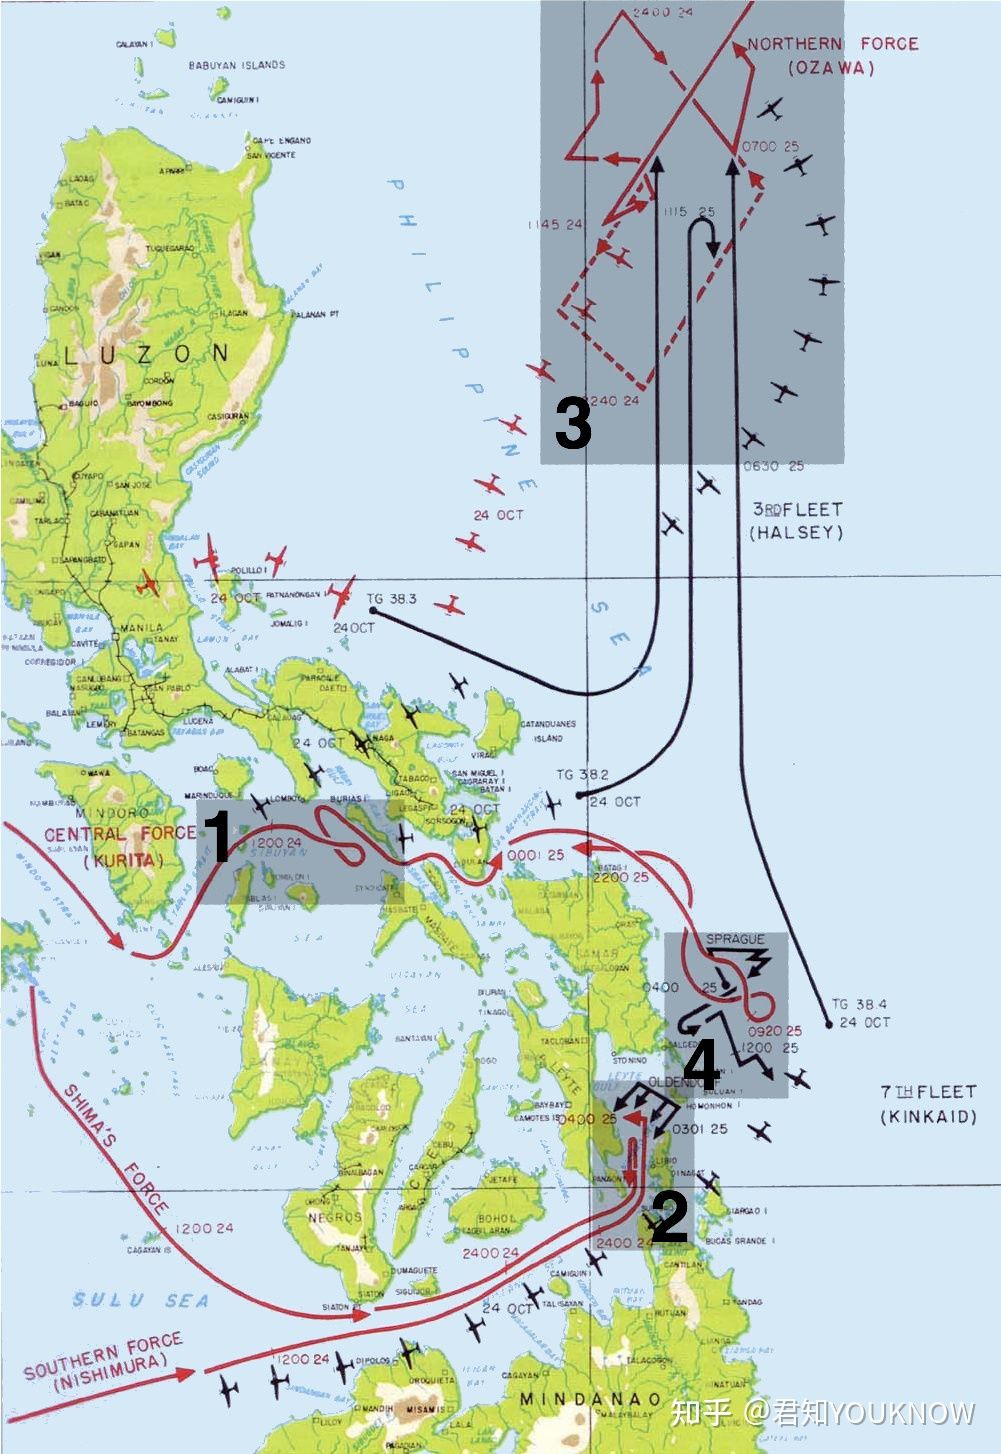 萊特灣海戰發生在菲律賓萊特島附近，是目前有史以來規模最大的海戰，由錫布延海戰、蘇里高海戰、恩加尼奧角海戰以及薩馬島海戰四次戰役組成